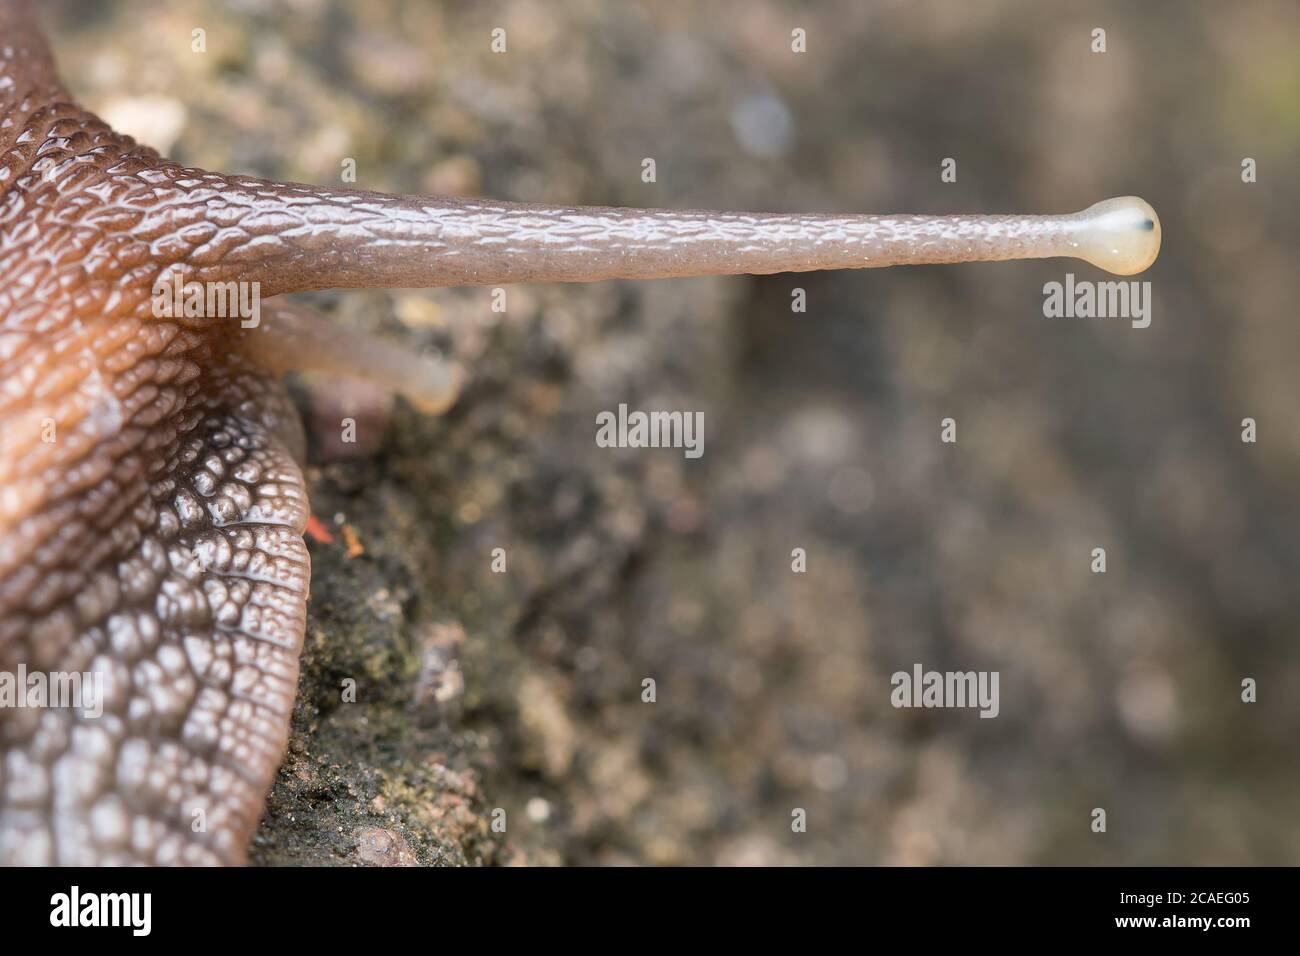 Foto di primo piano che mostra l'anatomia dell'occhio e dell'occhio della lumaca gigante africana (Achatina fulica) Foto Stock